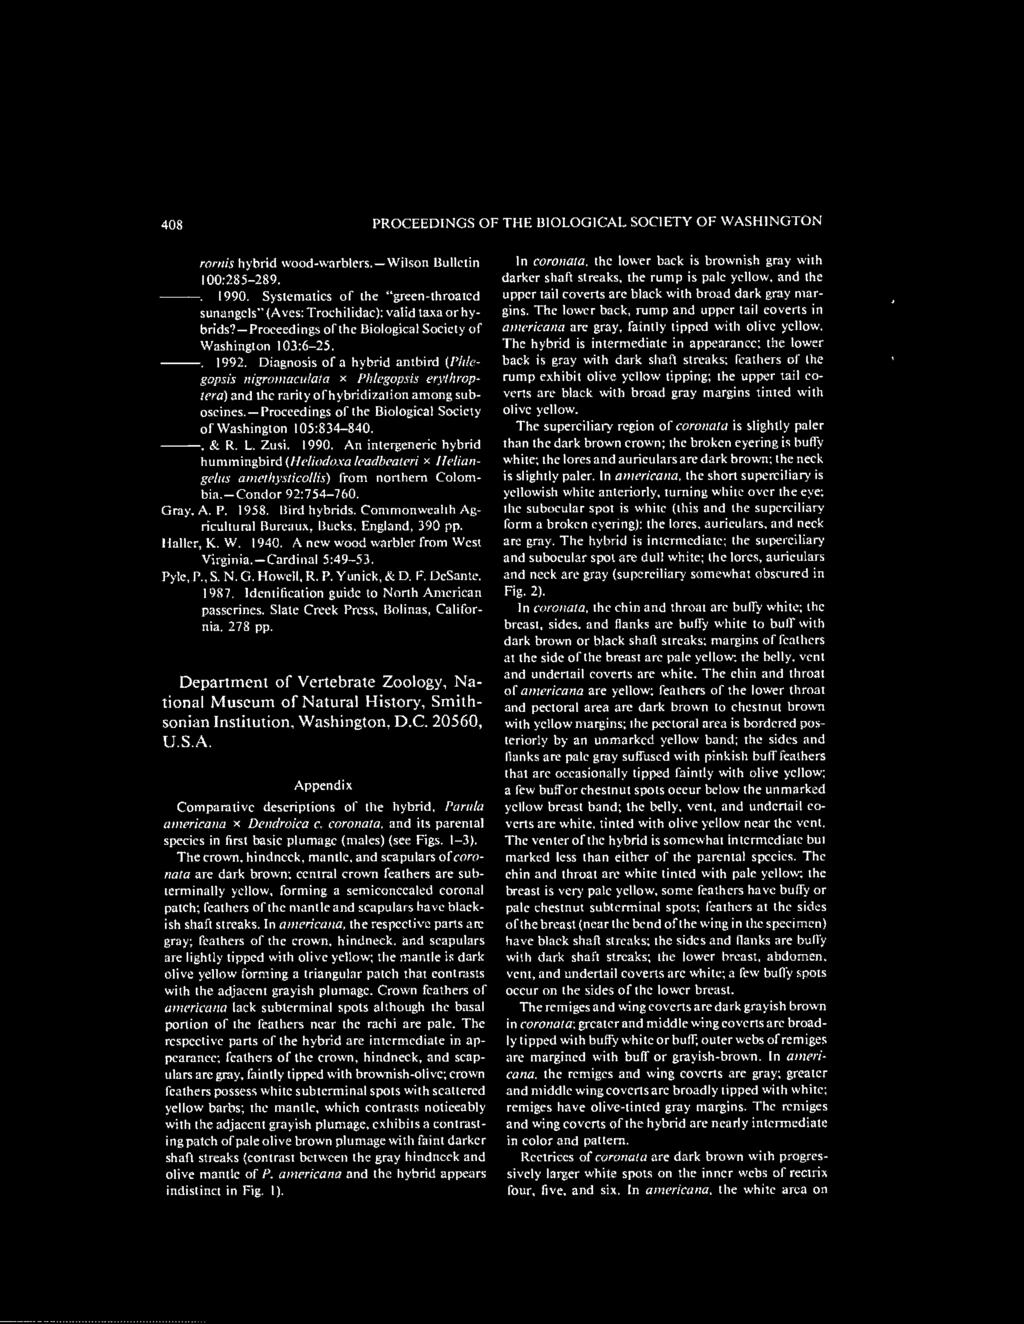 Diagnosis of a hybrid antbird {I'htegopsis nigromacuiata * Phlegopsis erythrop- /era) and the rarity ot hybridization among suboscines. Proceedings of the Biological Society of Washington 105:834-840.